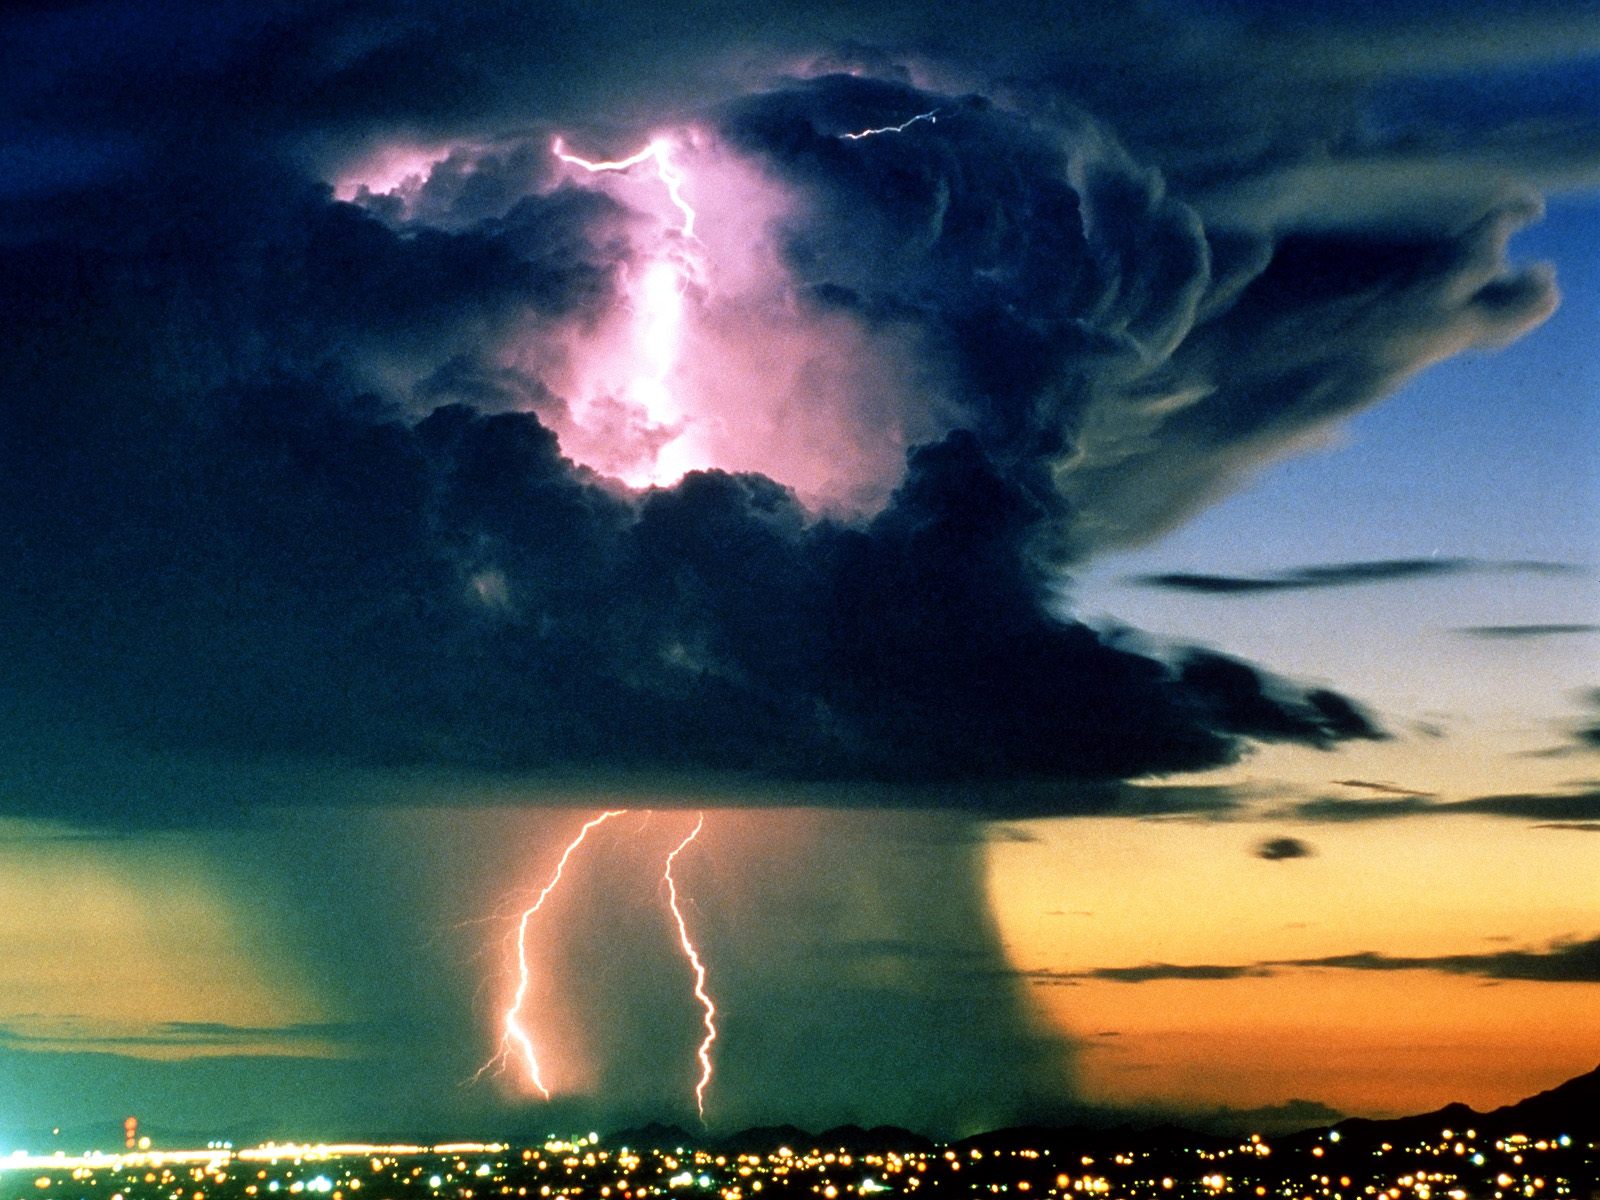 http://1.bp.blogspot.com/-KWKcionM91Q/Tke33-vNmmI/AAAAAAAAPUg/Ud4YA569cX8/s1600/Electrical_Storm_at_Sunset.jpg